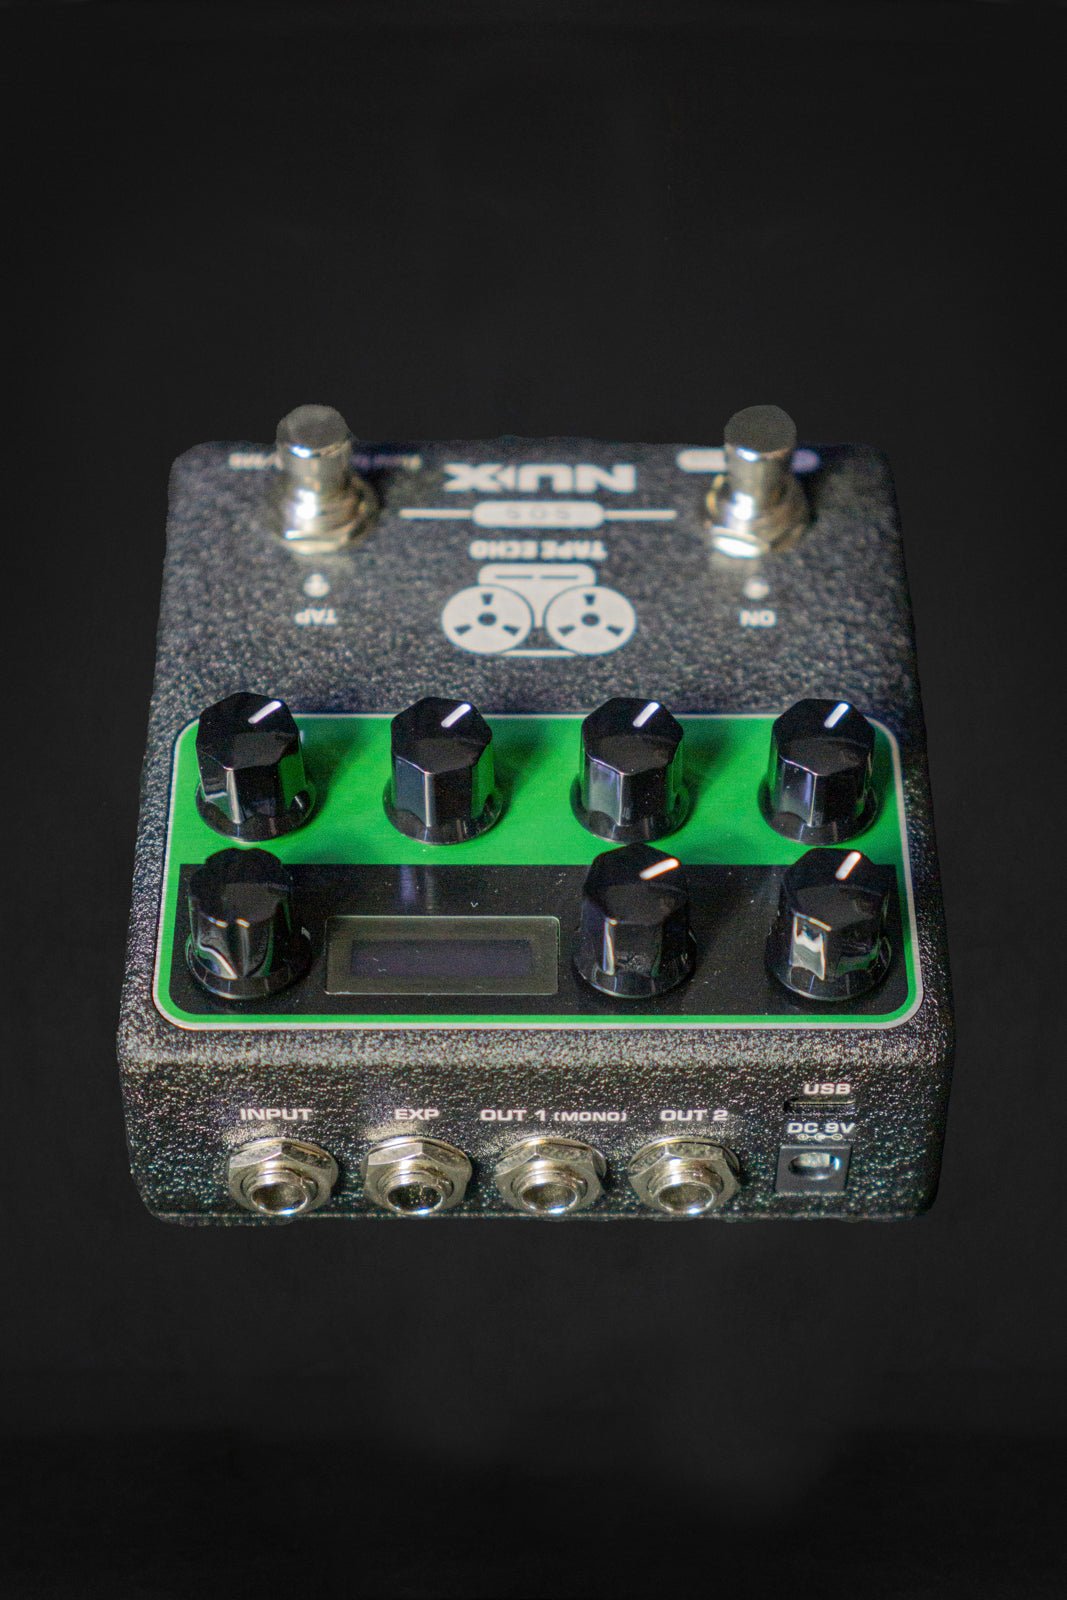 NU-X Tape Echo Emulator Pedal - Effects Pedals - NU-X